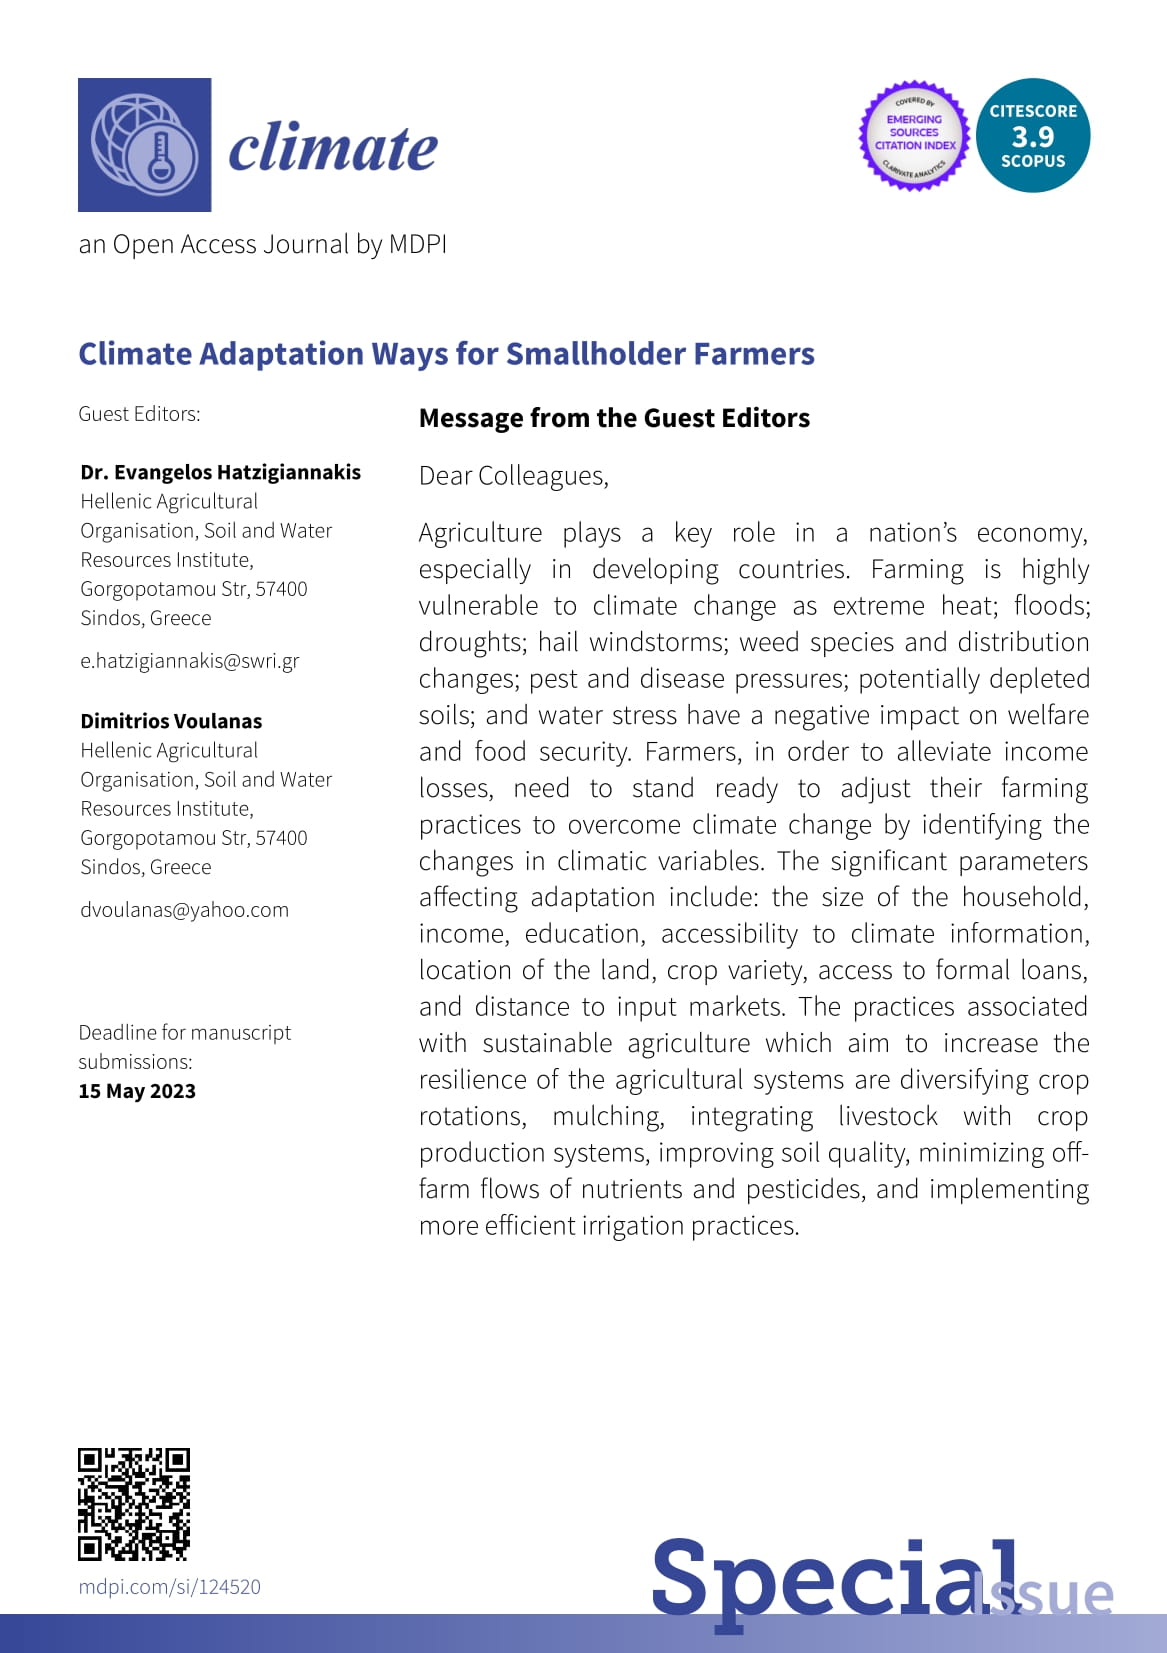 climate_farmers-1.jpg